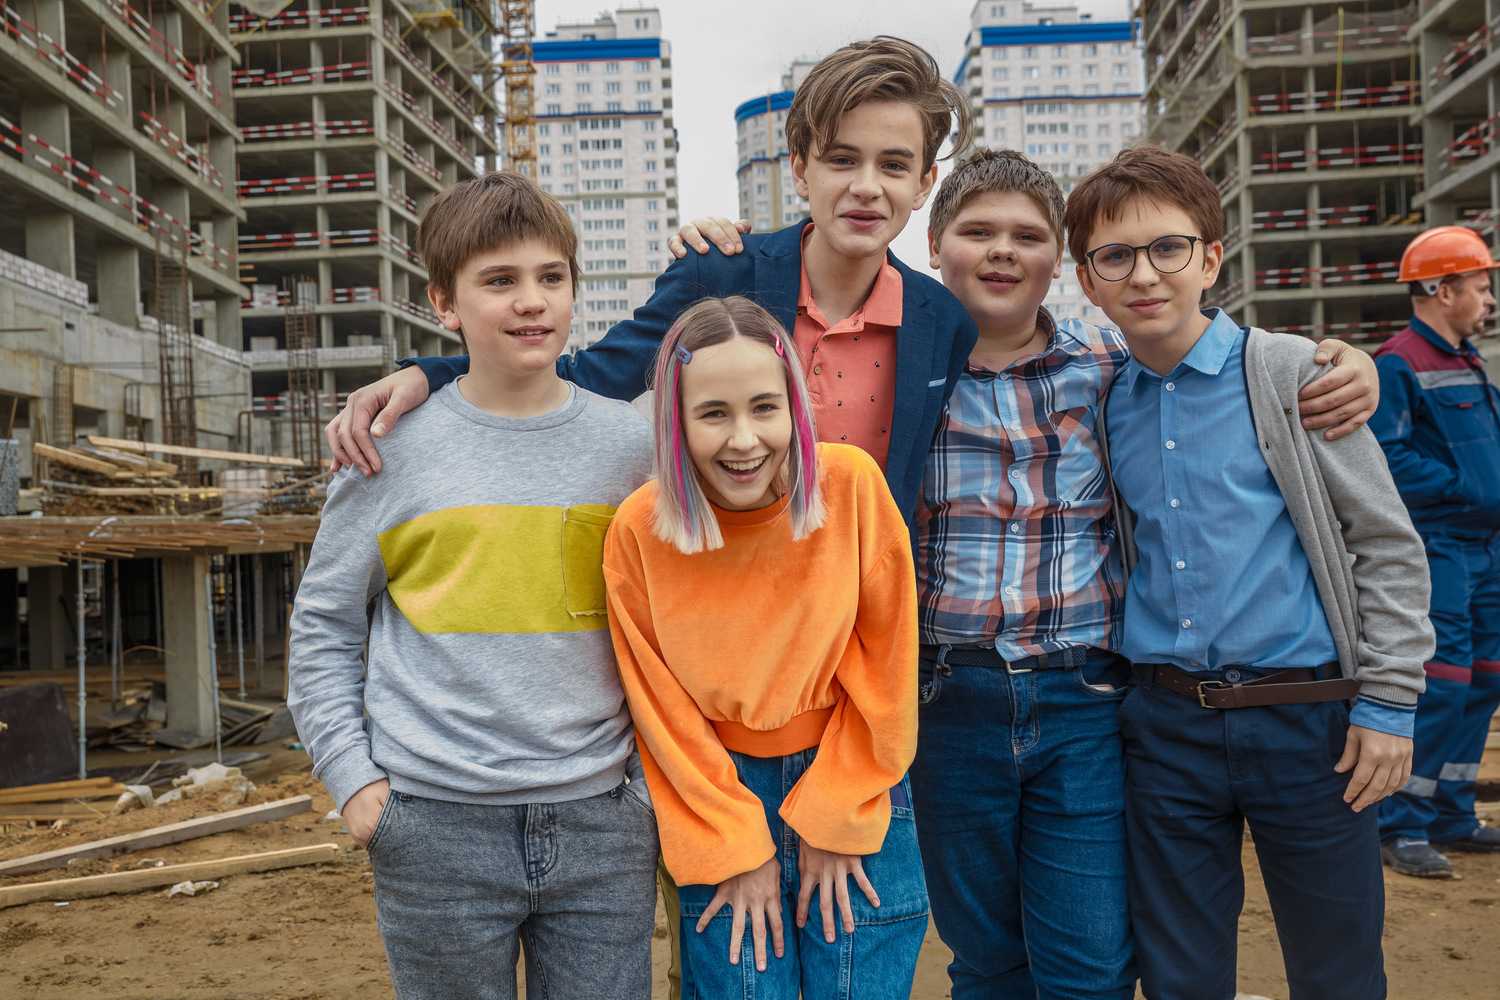 Гости из прошлого 2 сезон дата выхода серий, когда выйдет продолжение сериала в россии на стс и будет ли в 2022 году, трейлер